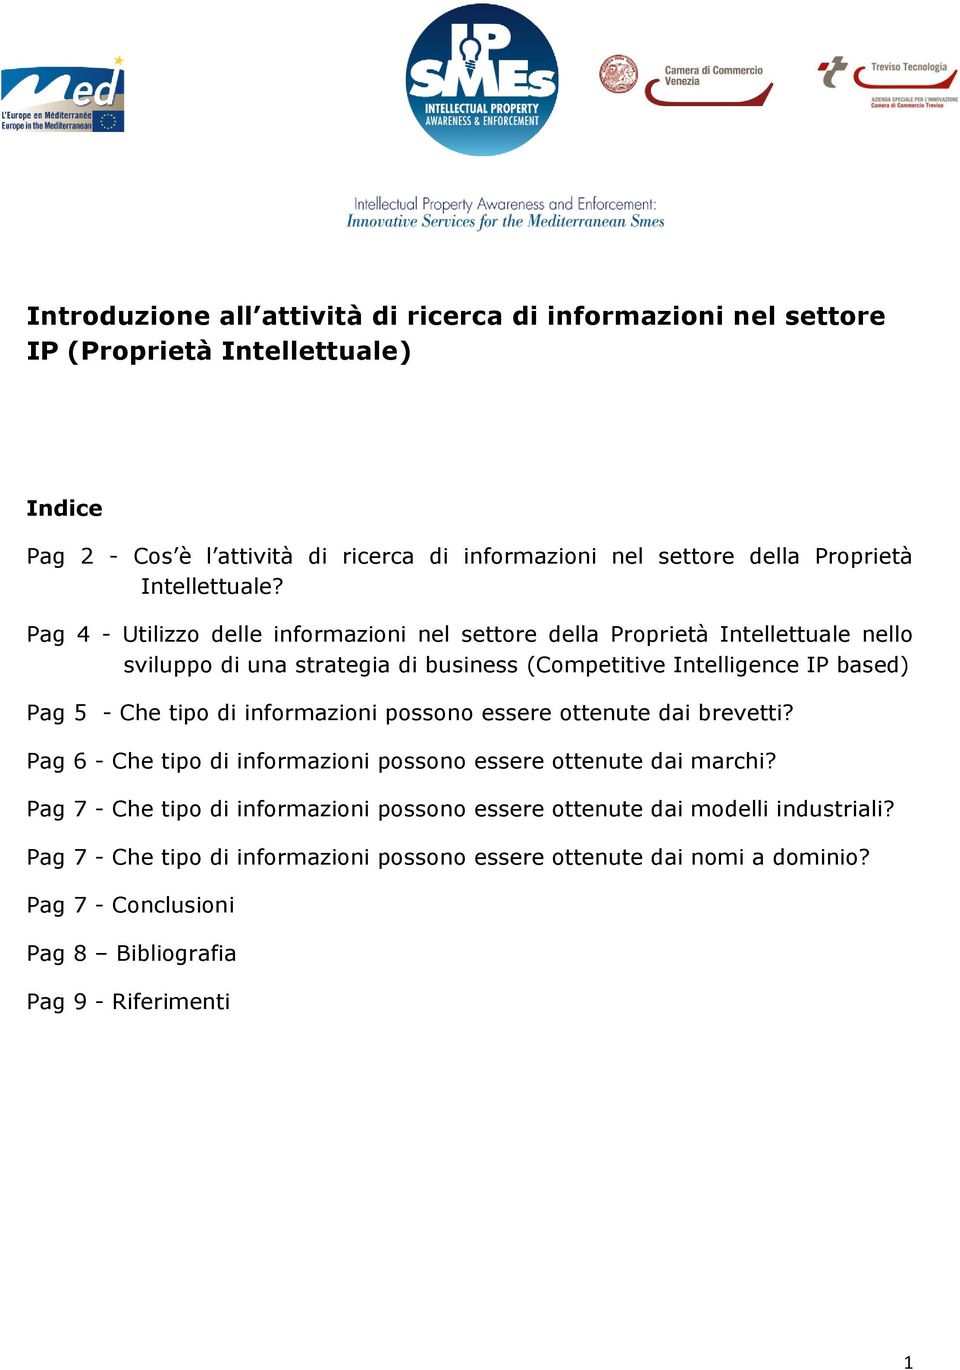 Pag 4 - Utilizzo delle informazioni nel settore della Proprietà Intellettuale nello sviluppo di una strategia di business (Competitive Intelligence IP based) Pag 5 - Che tipo di